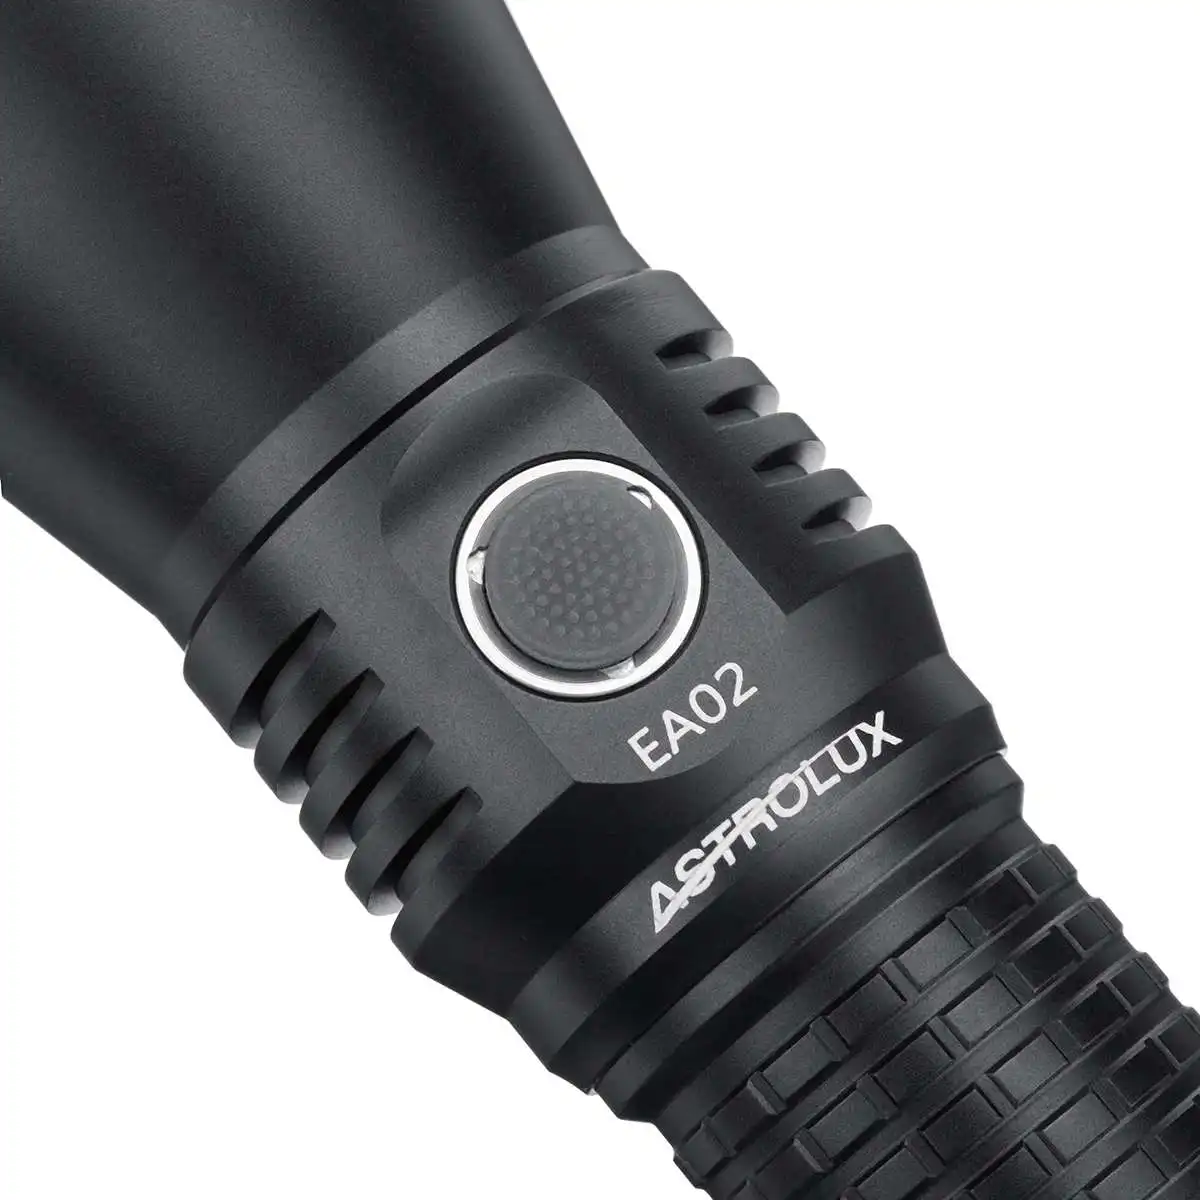 구매 Astrolux EA02 EDC 손전등 1365lm IPX7 충전식 야외 작업 조명, 캠핑 자기 방어 토치 라이트 6000K 배터리 포함